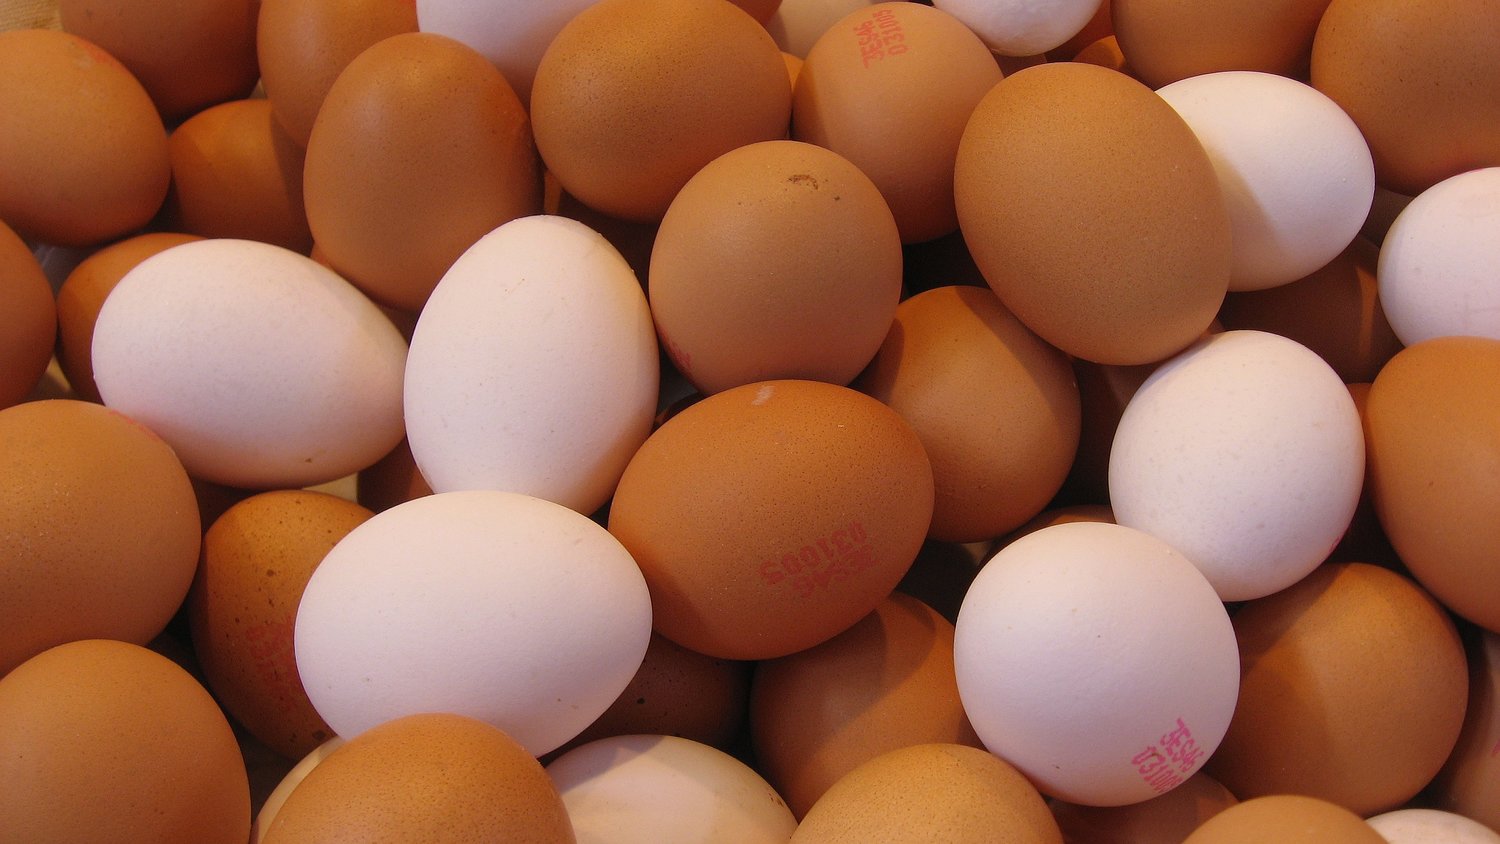 吃了30多年鸡蛋,才知道红皮蛋和白皮蛋的区别,涨知识了